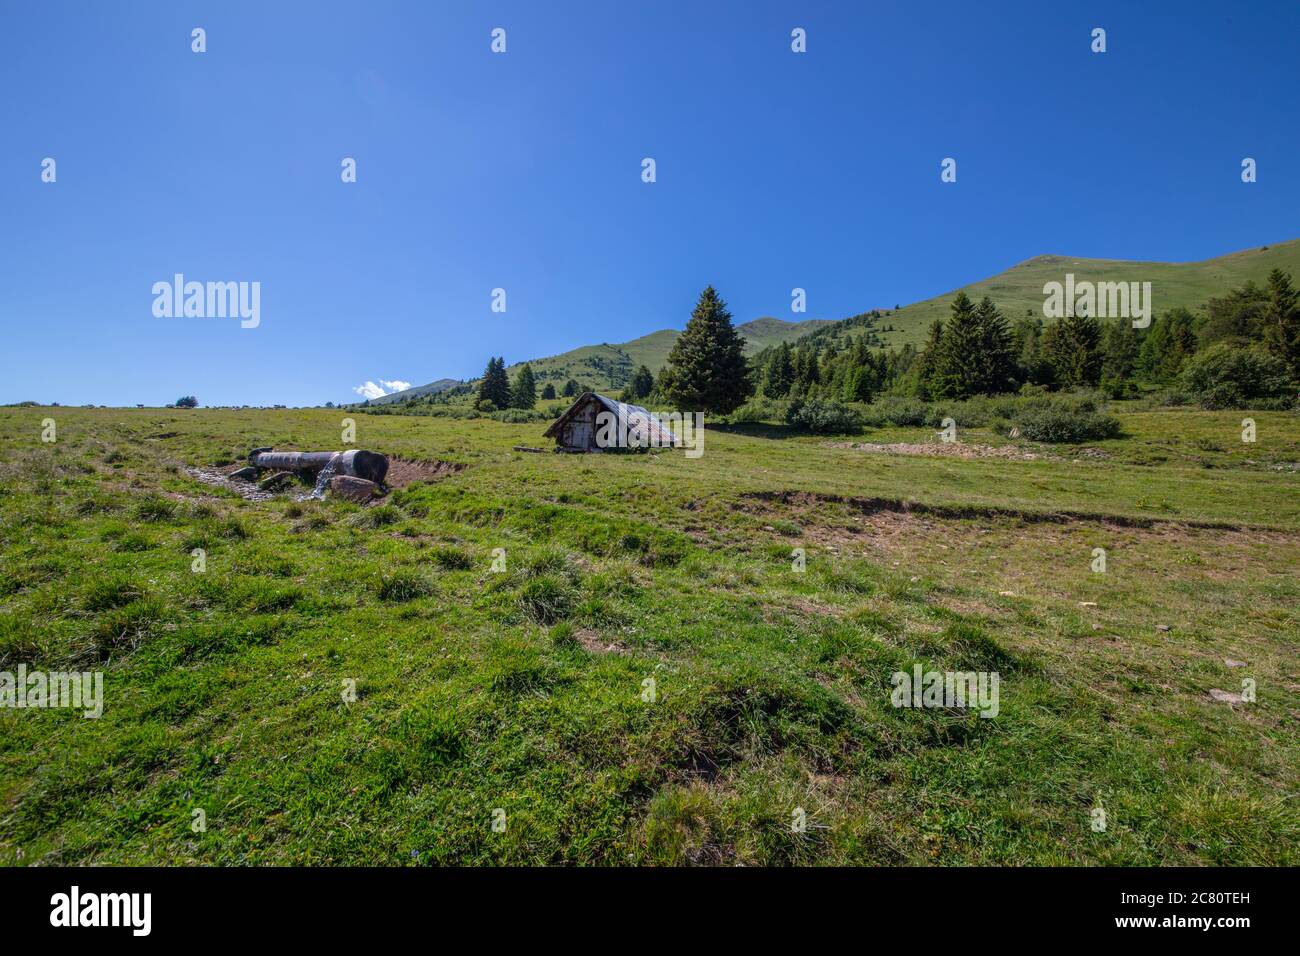 Un rifugio nella campagna montana, Tonale Est, Trentino, Italia Foto Stock